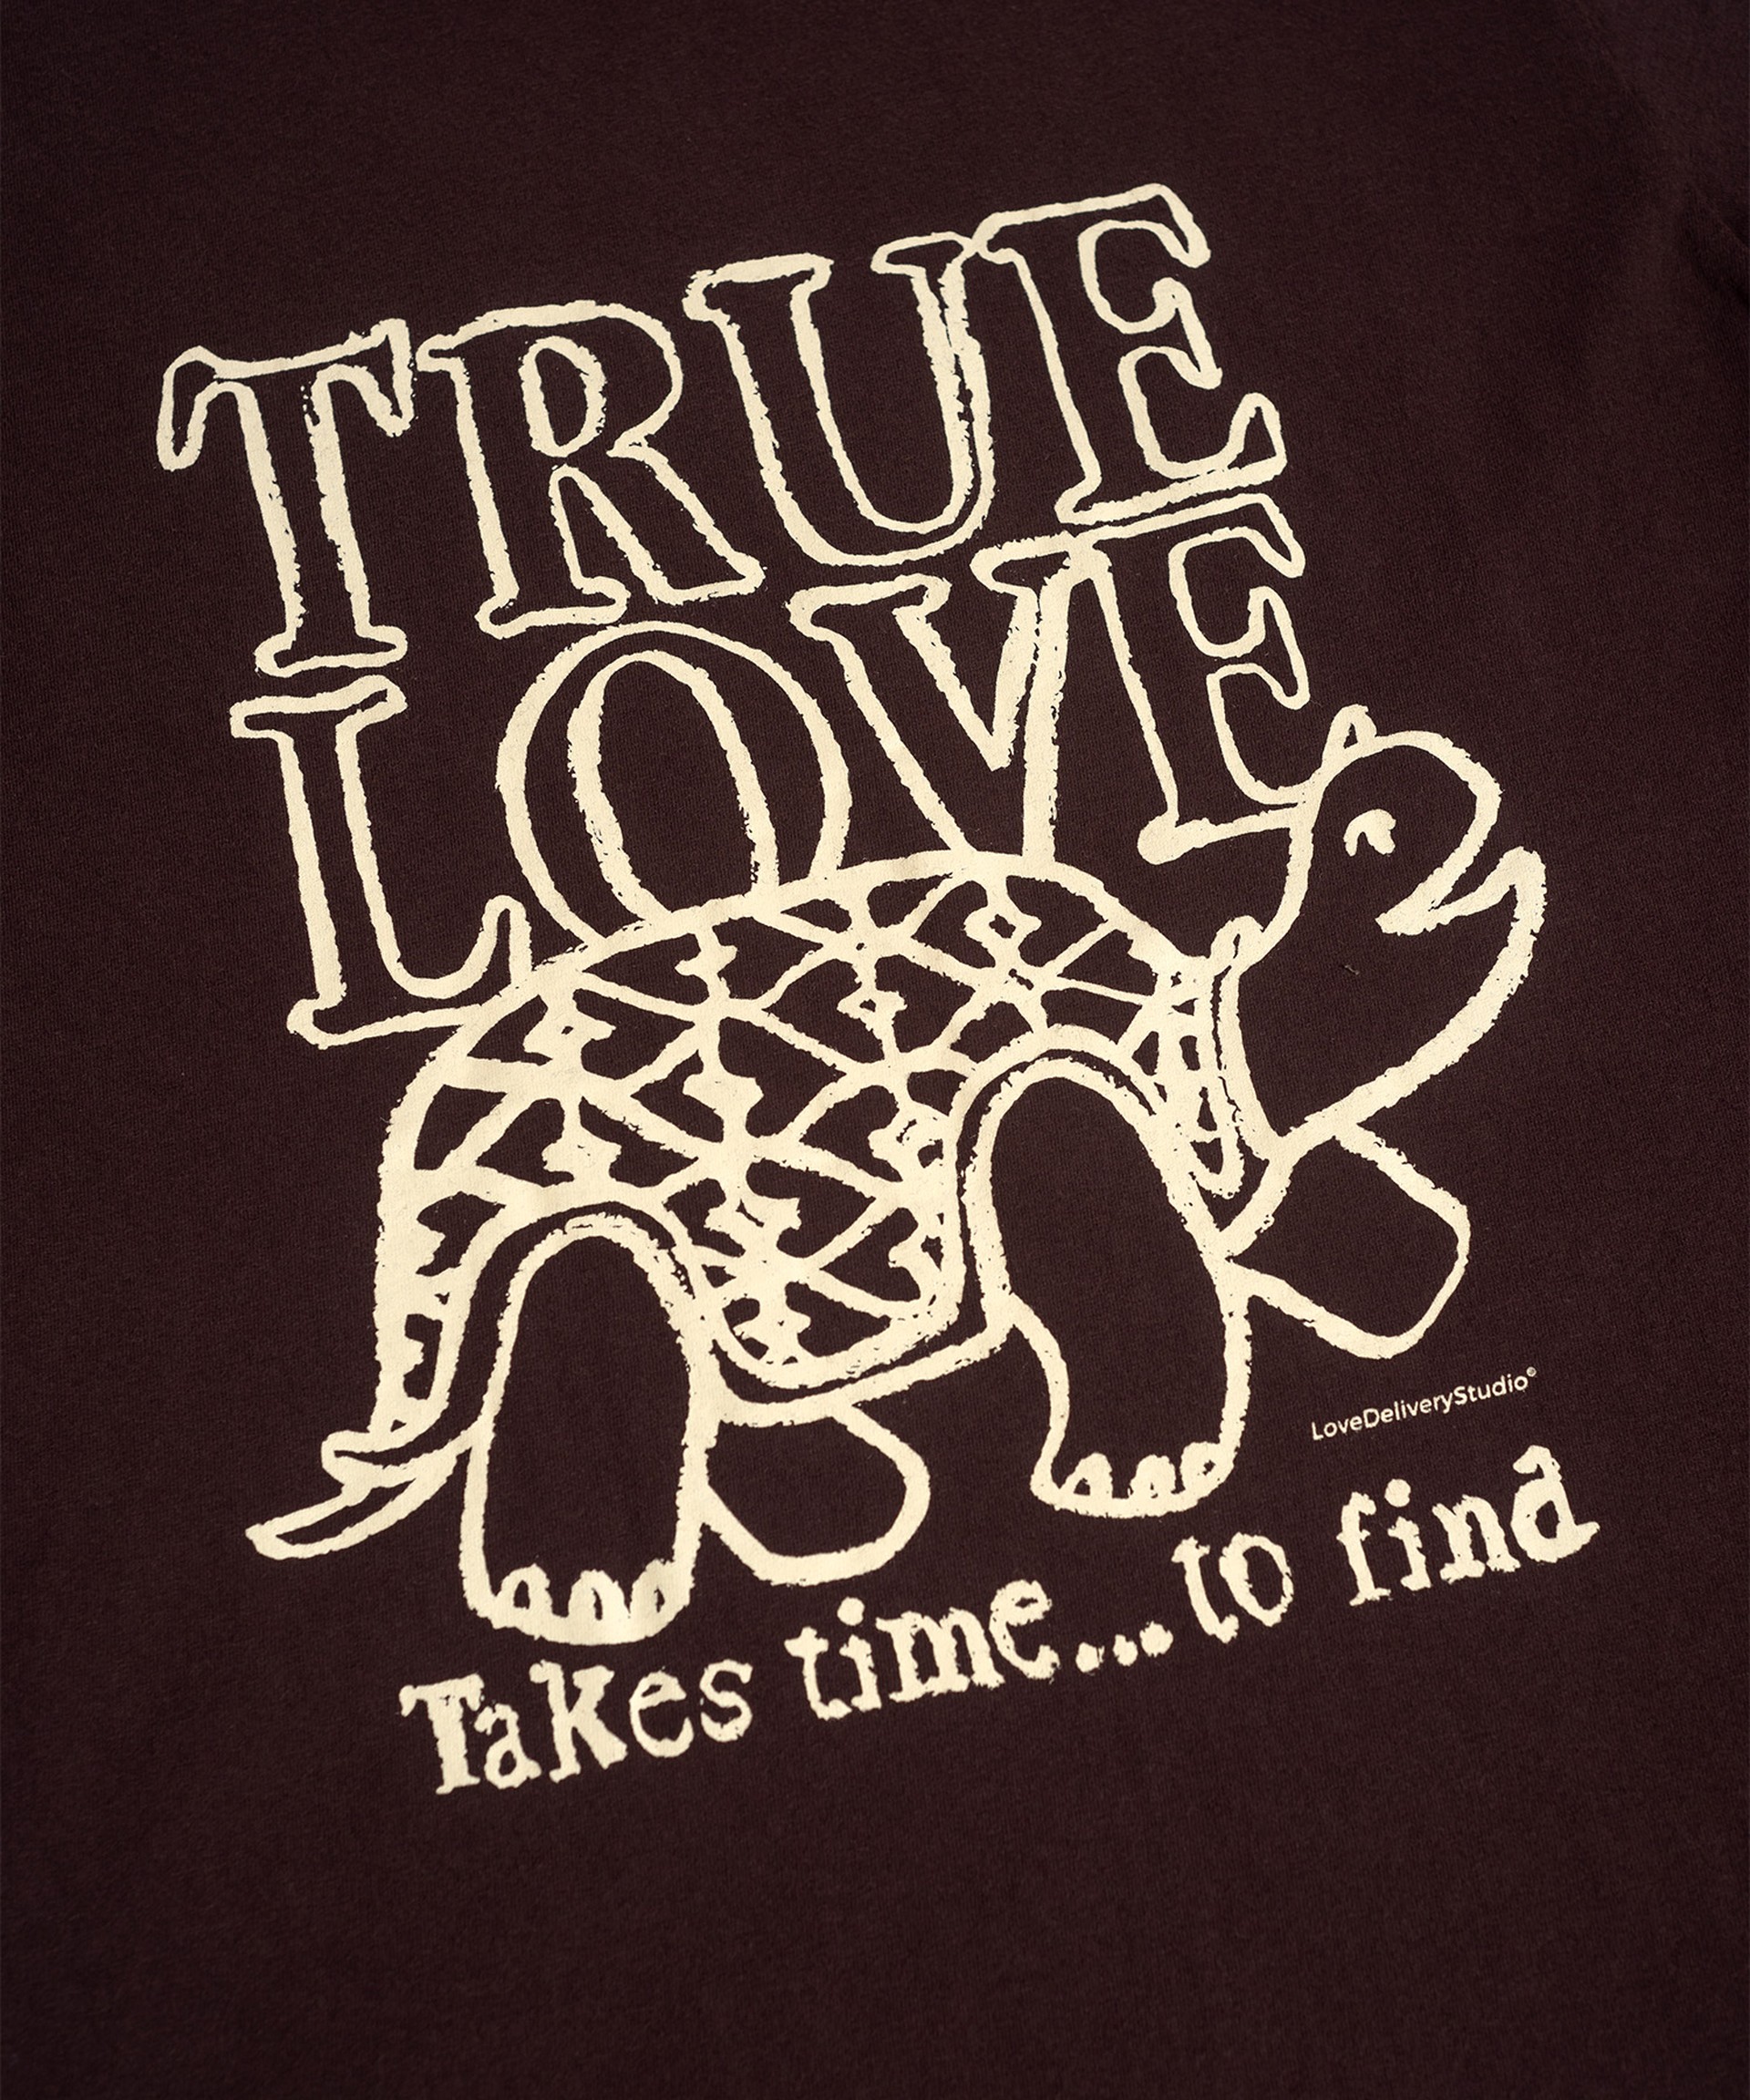 Camiseta True Love